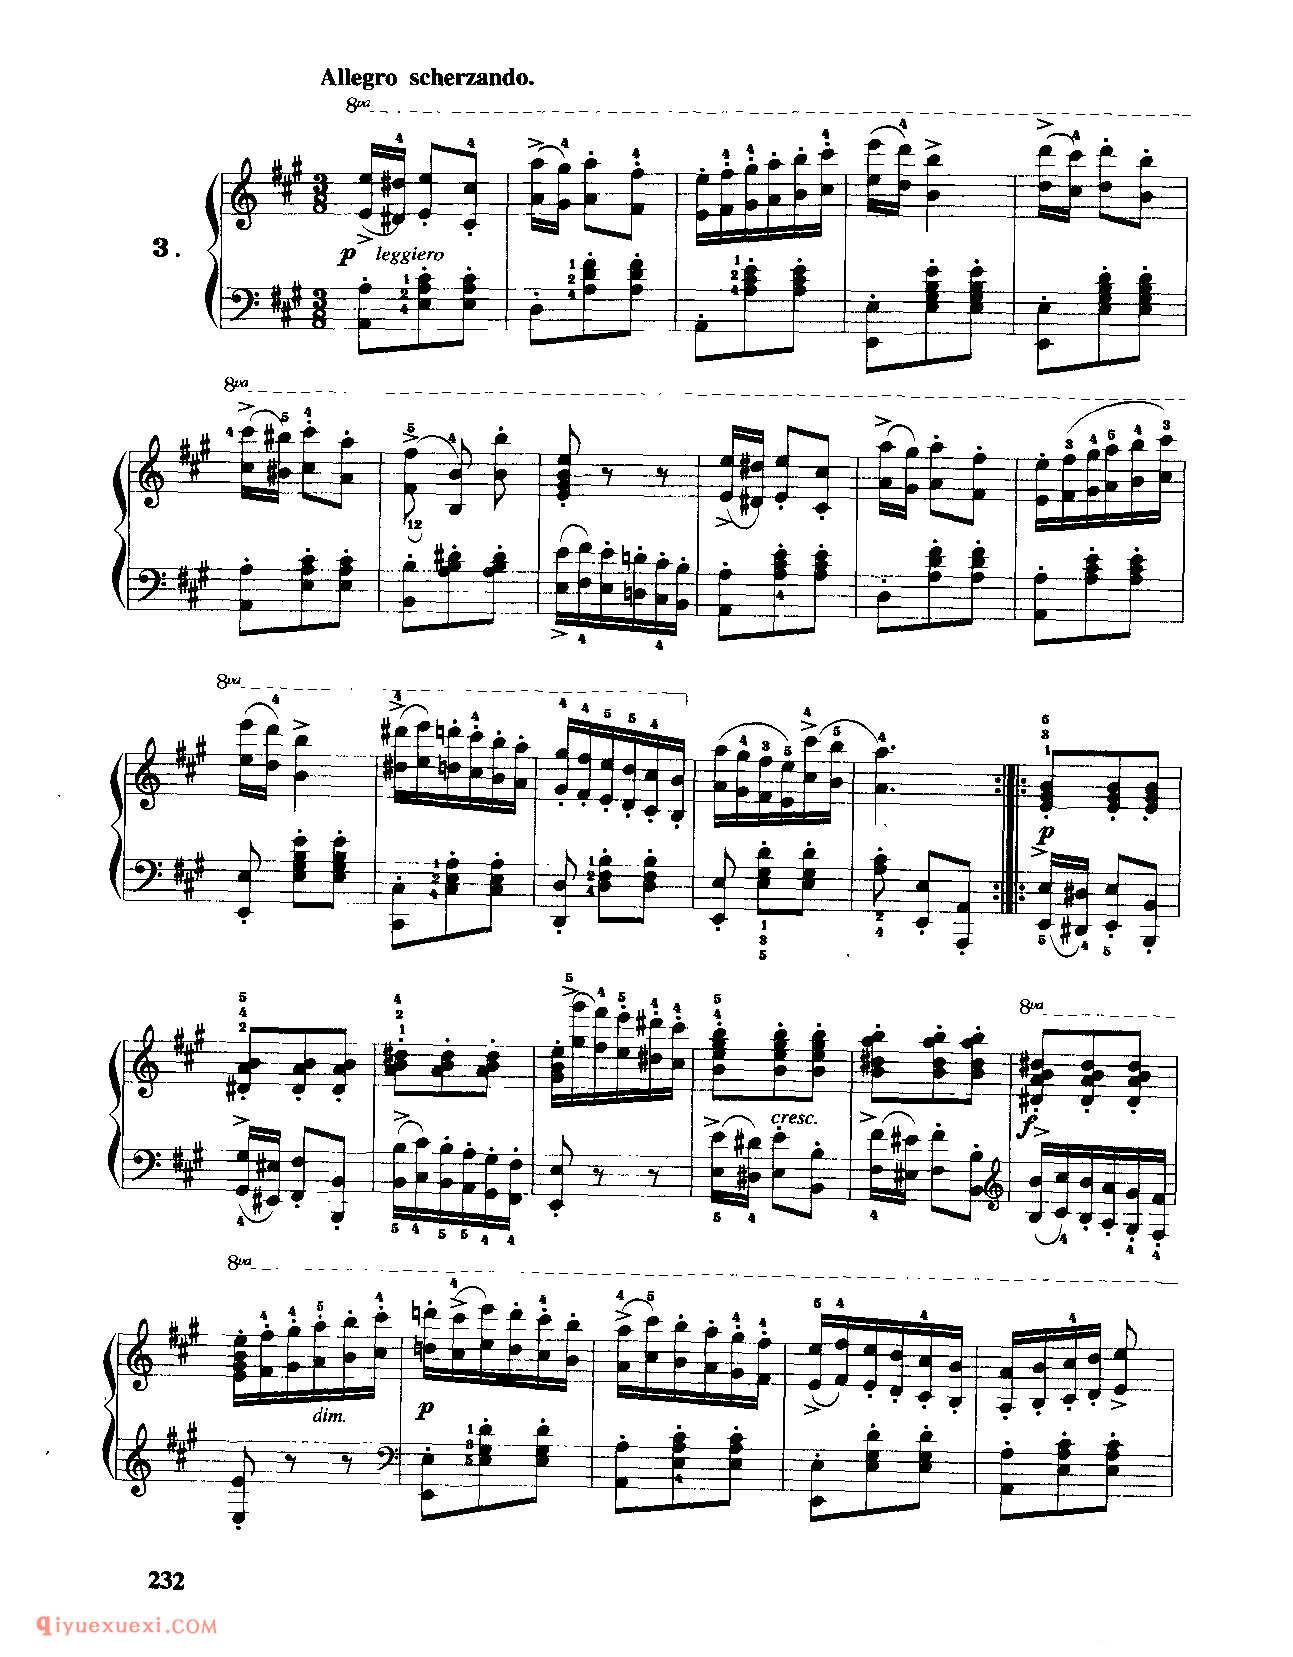 车尔尼作品553_钢琴八度练习曲_车尔尼553钢琴练习曲集